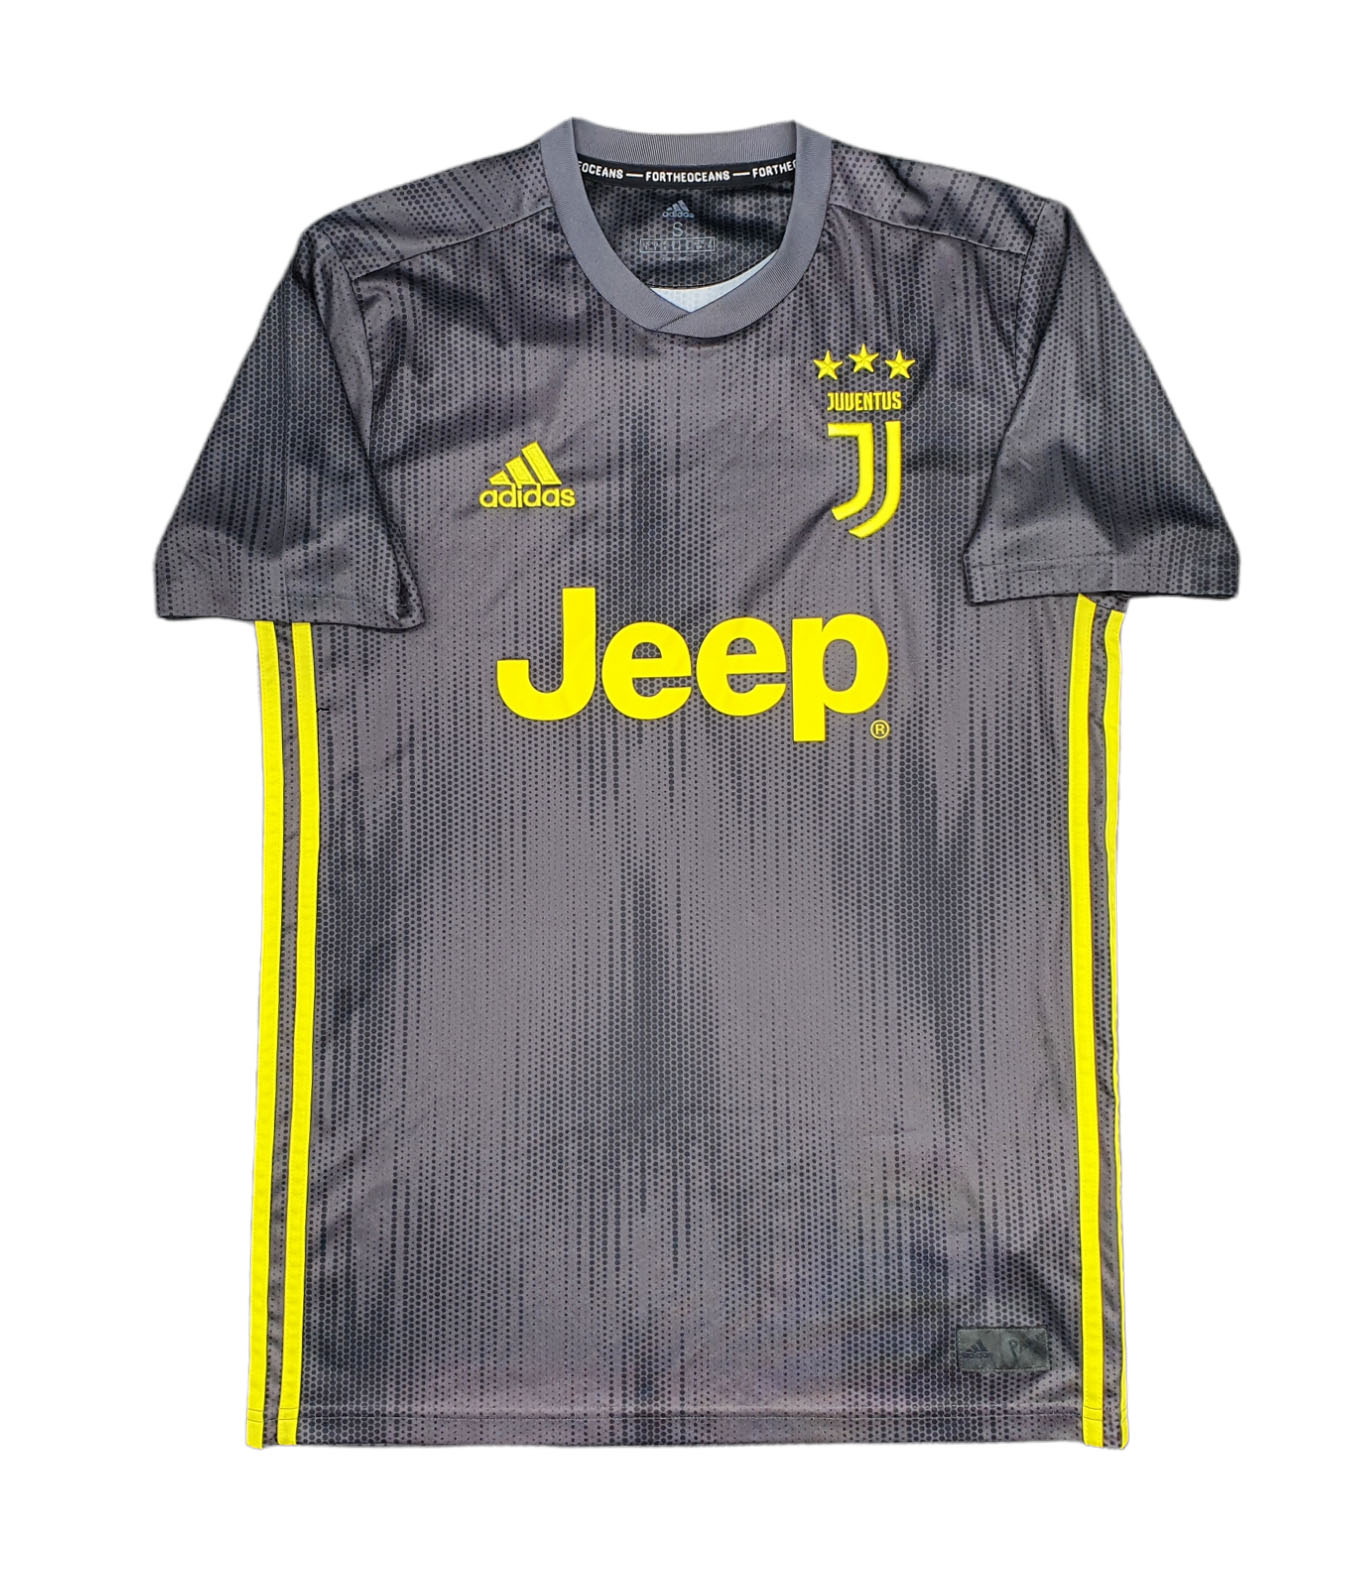 Juventus 2018-19 maglia Adidas third